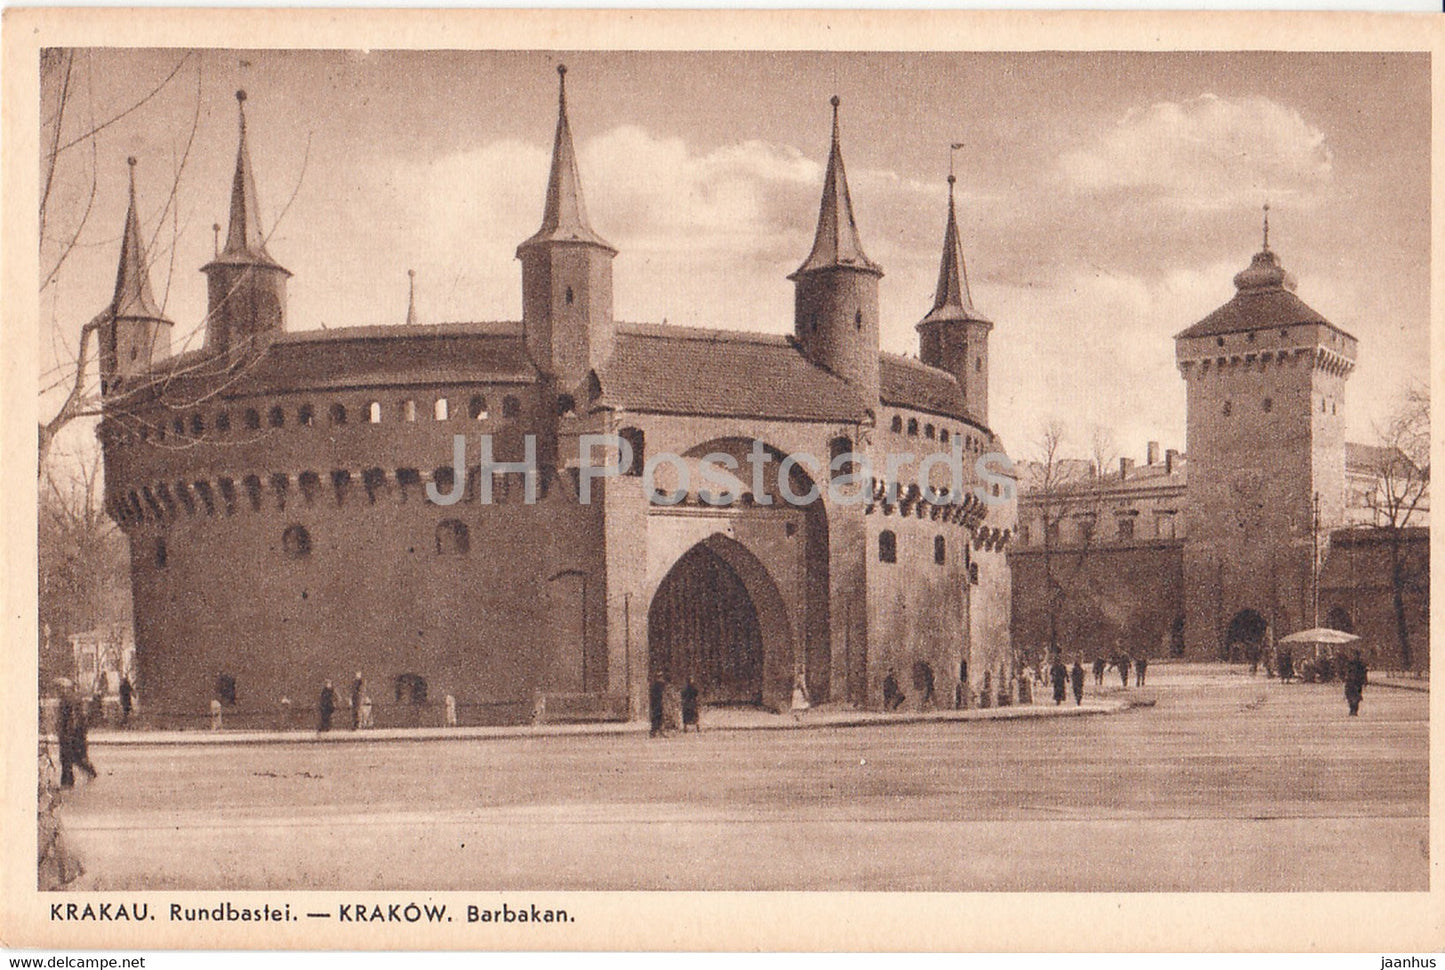 Krakau - Krakow - Rundbastei - Barbakan - 20 - old postcard - Poland - unused - JH Postcards